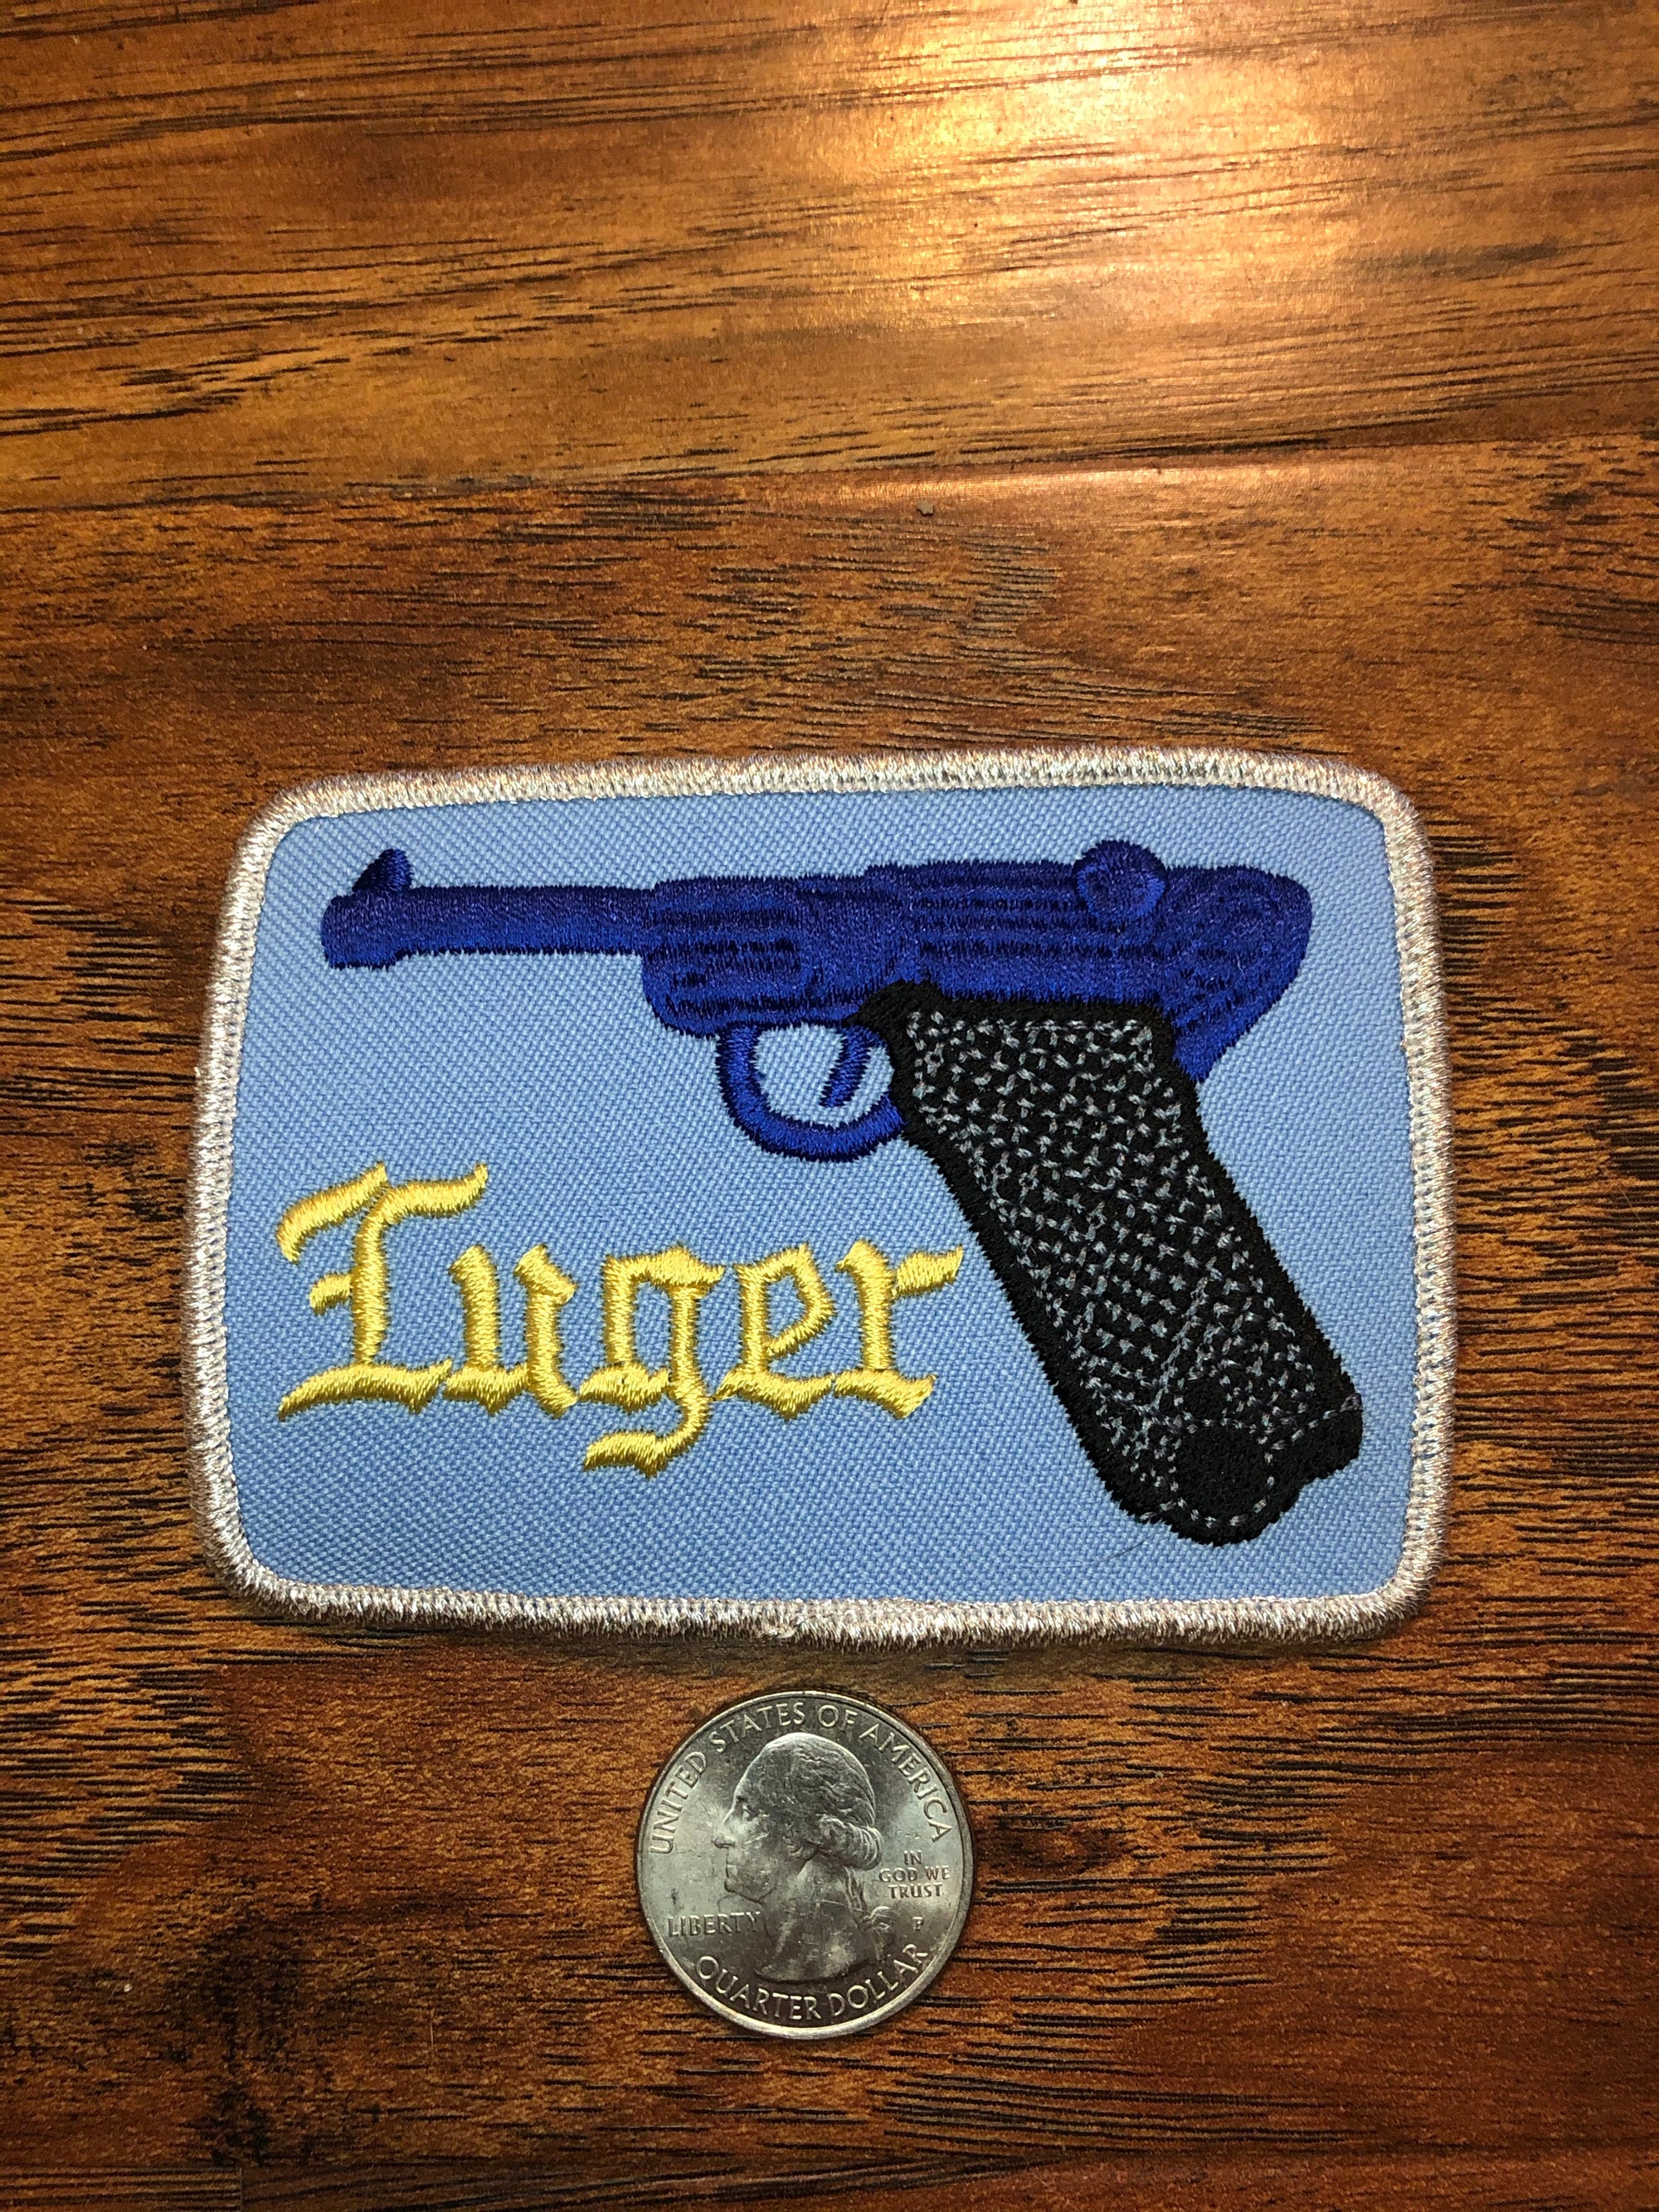 Vintage Luger